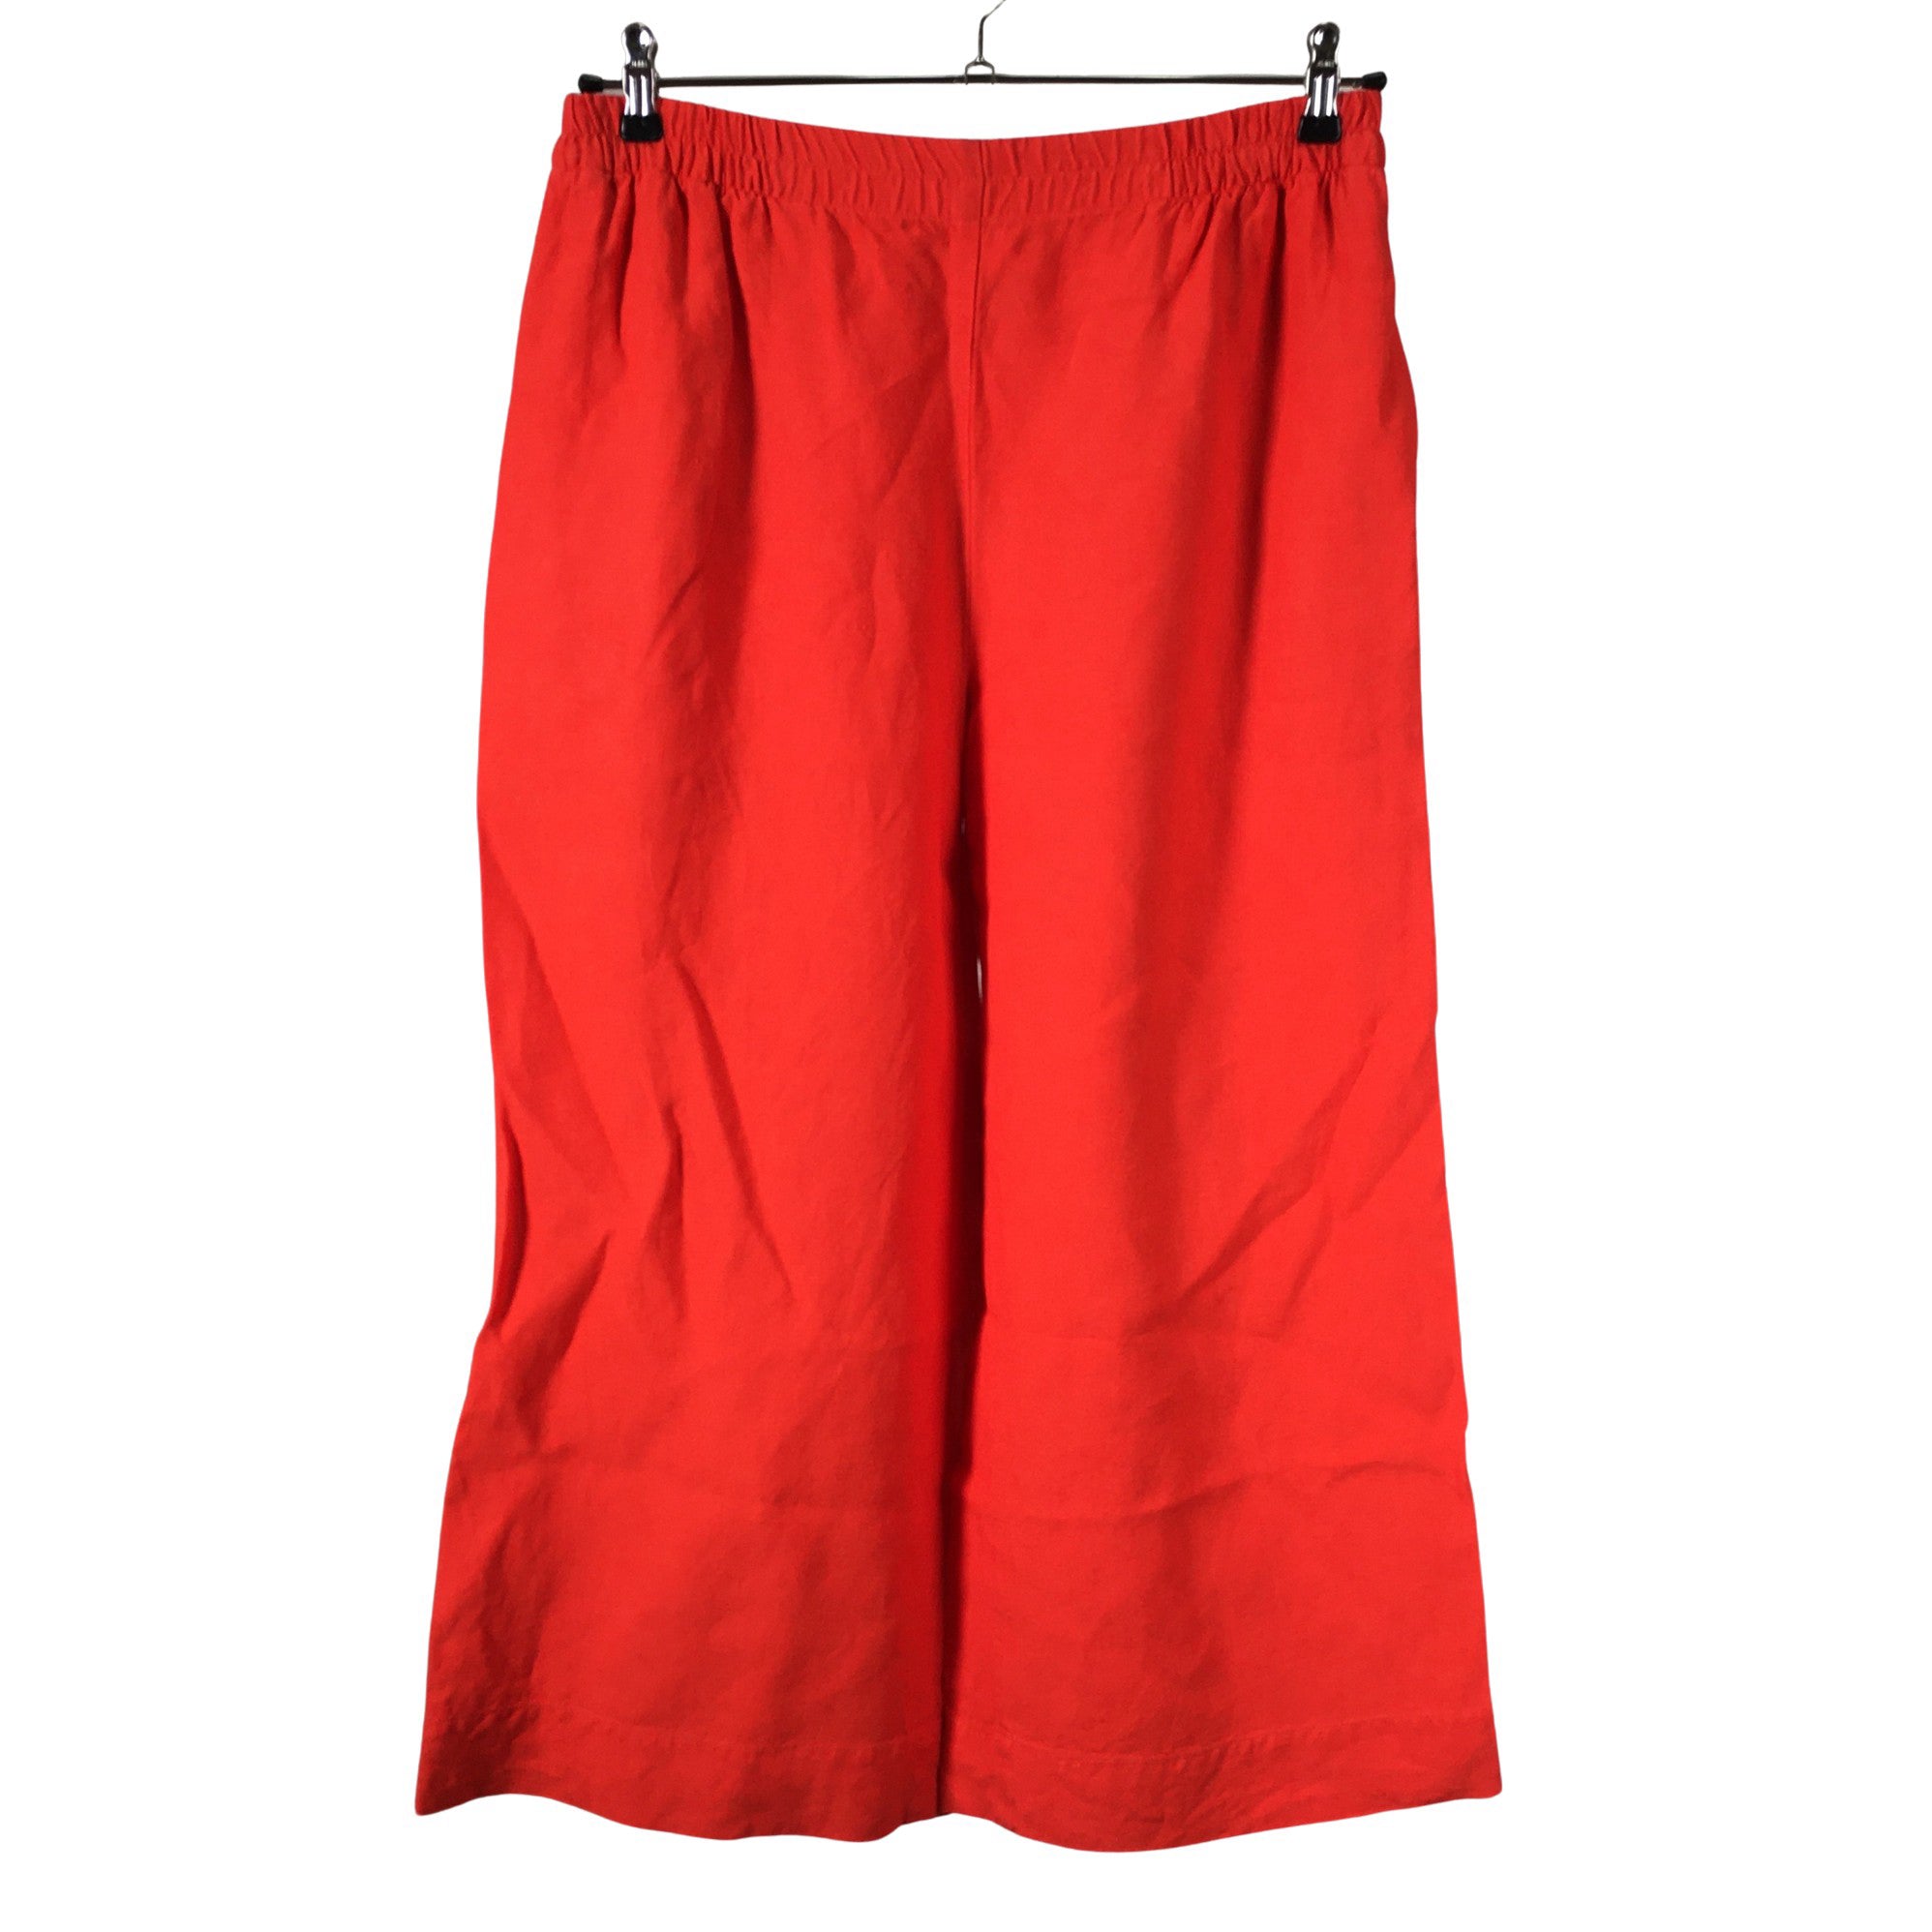 Women's Marimekko Trousers, size 46 (Red) | Emmy